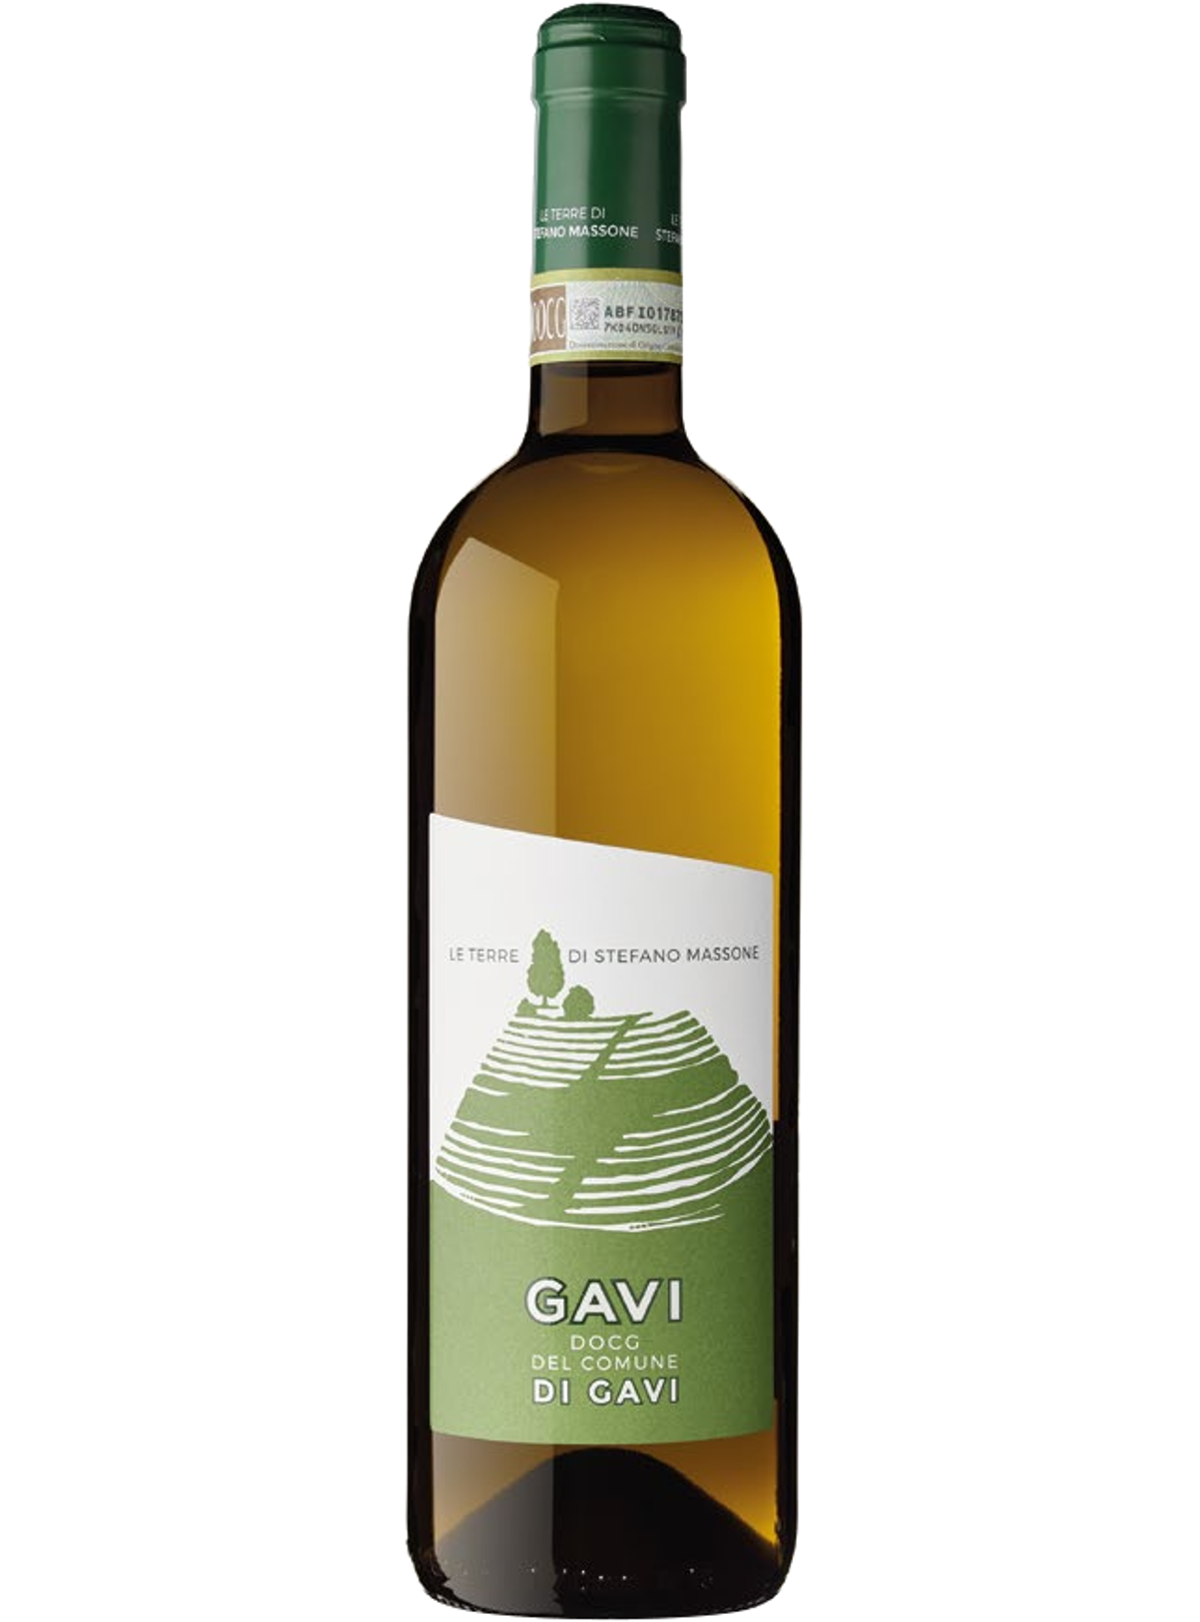 Вино Гави Masera. Гави ди Гави вино белое. Gavi Masera cухое белое вино Италия. Гави дель комуне вино коммуне.